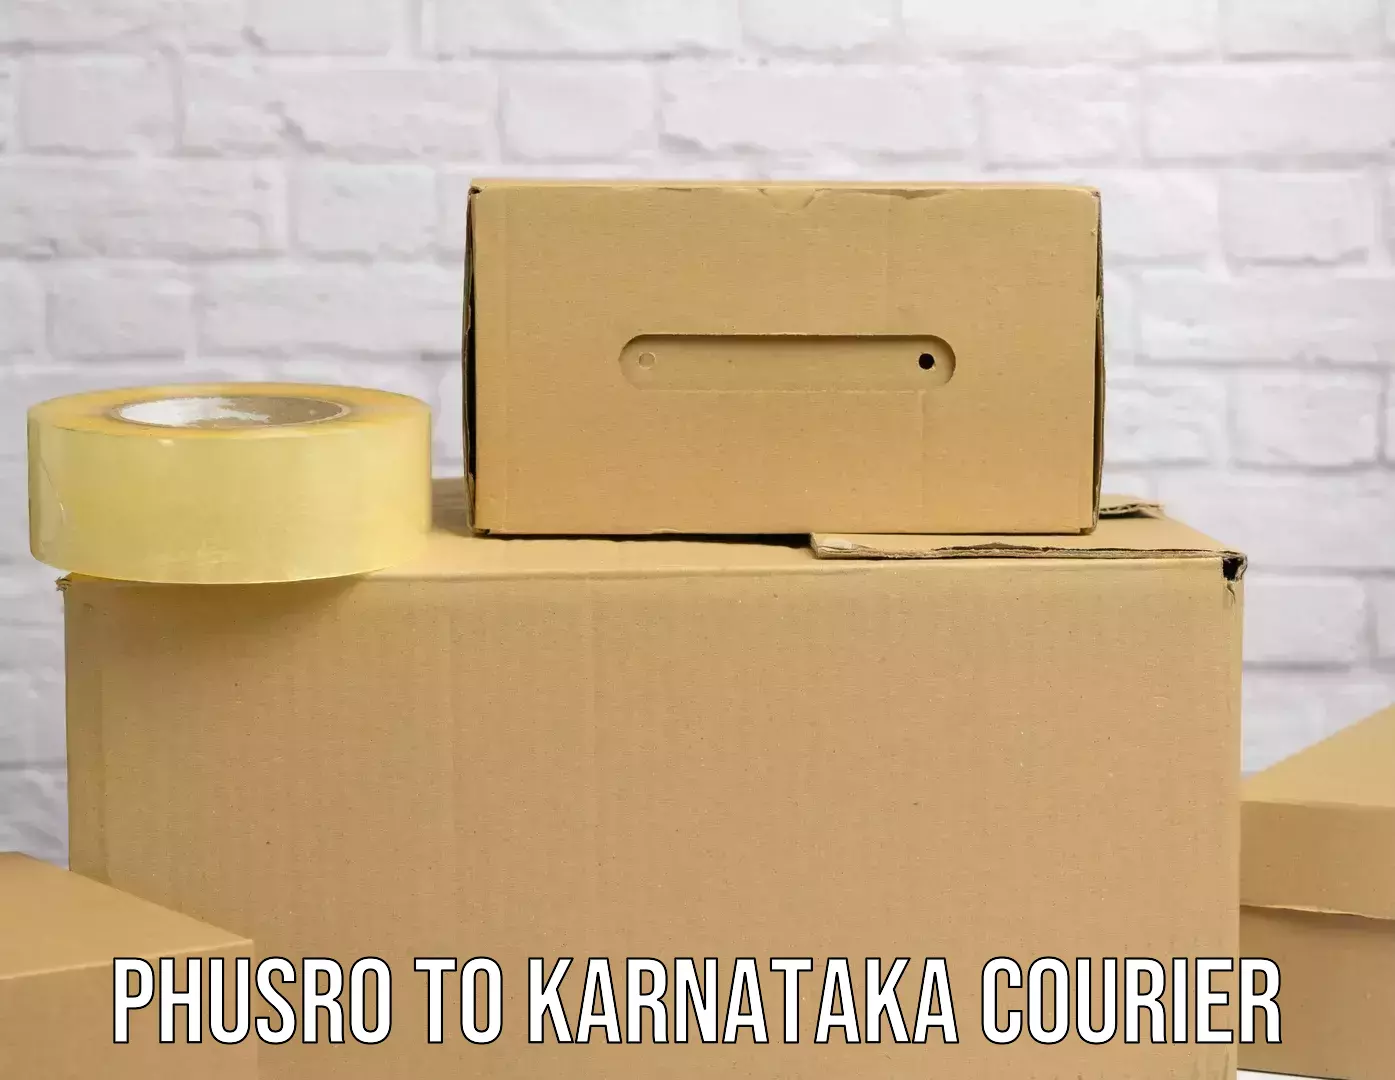 Tracking updates Phusro to Karnataka